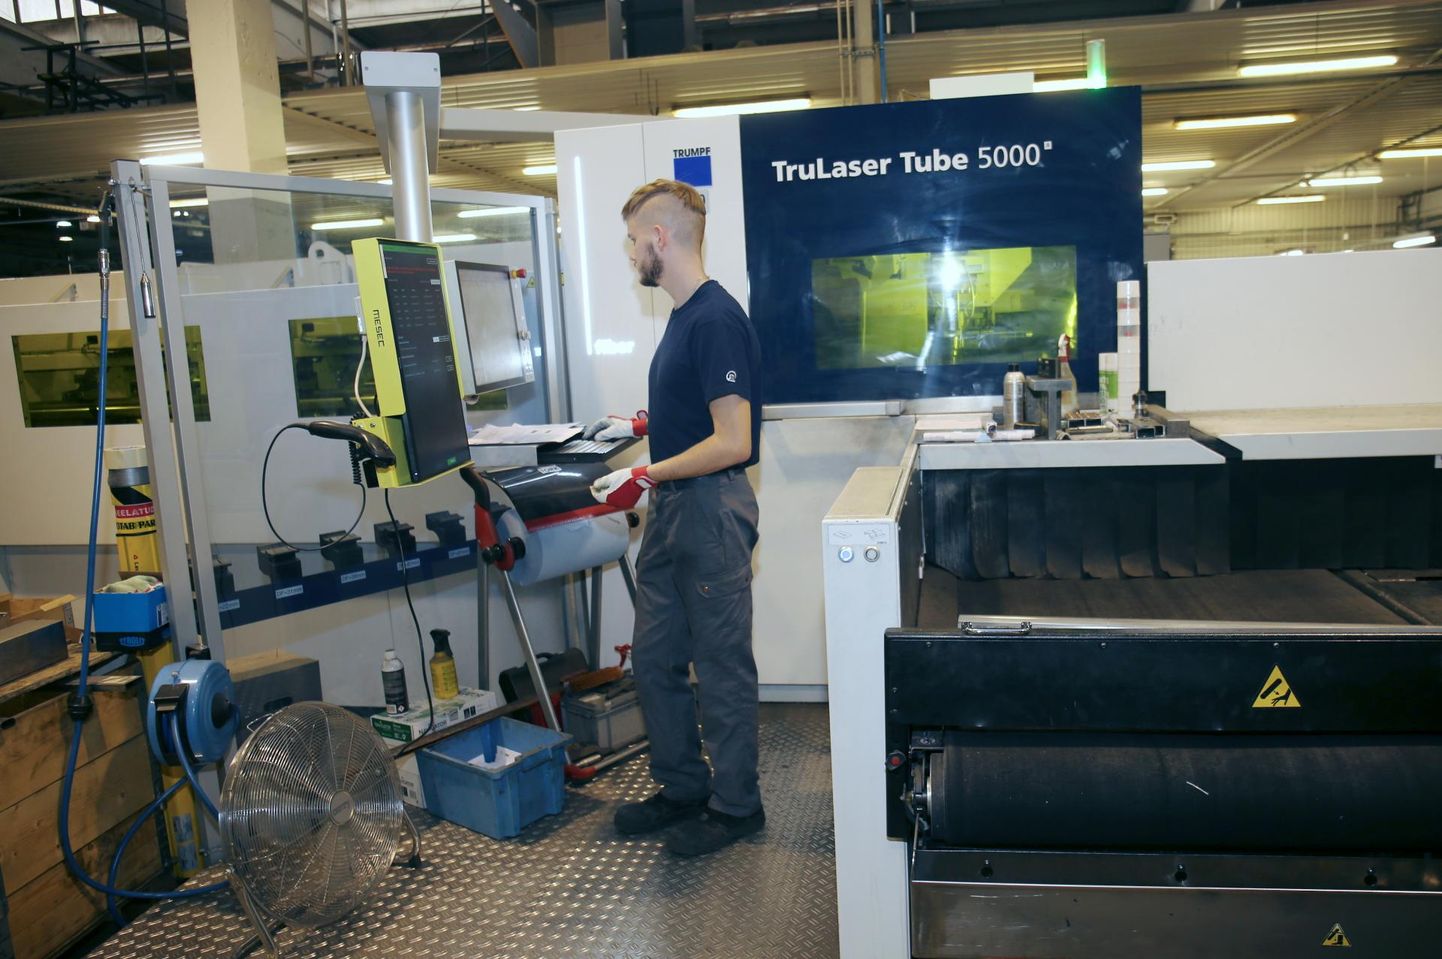 Tarmeteci tootmishoones on masinad, mis lõikavad laseri abil metalltorusid, kuid tööd leiab ka lihtsamatel ja vähem teadmisi nõudvatel ametikohtadel.